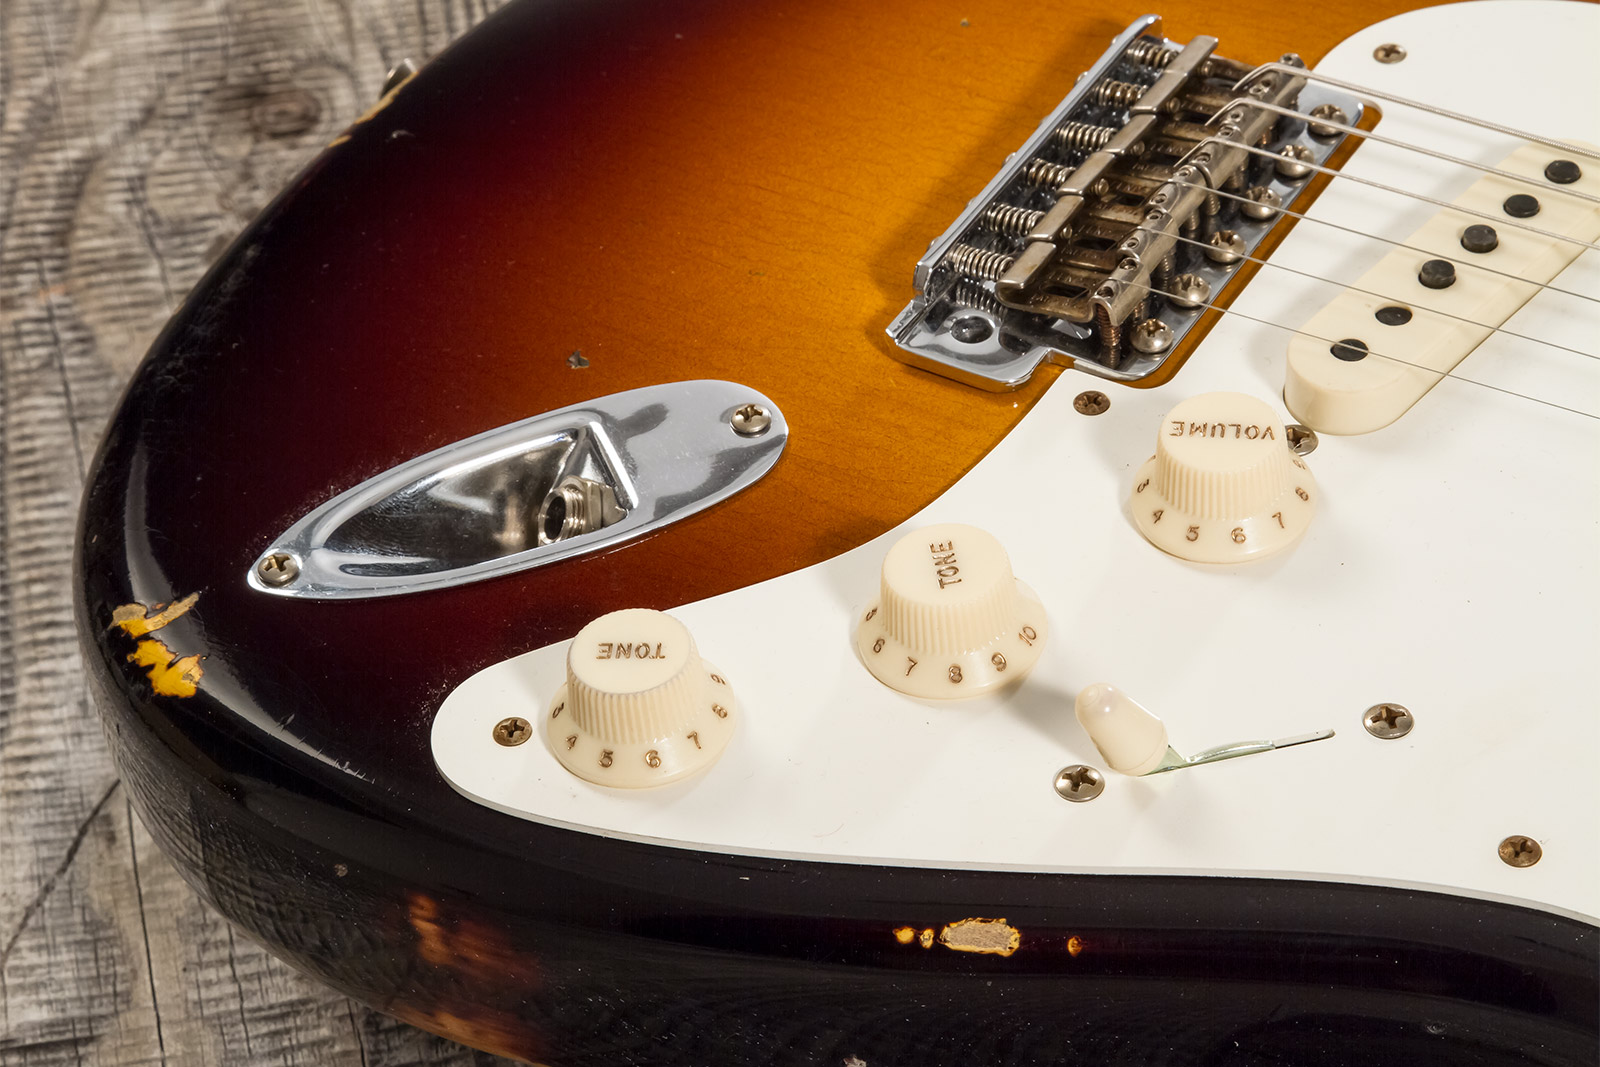 Fender Custom Shop Strat 1957 3s Trem Mn #cz571791 - Relic Wide Fade 2-color Sunburst - Elektrische gitaar in Str-vorm - Variation 3